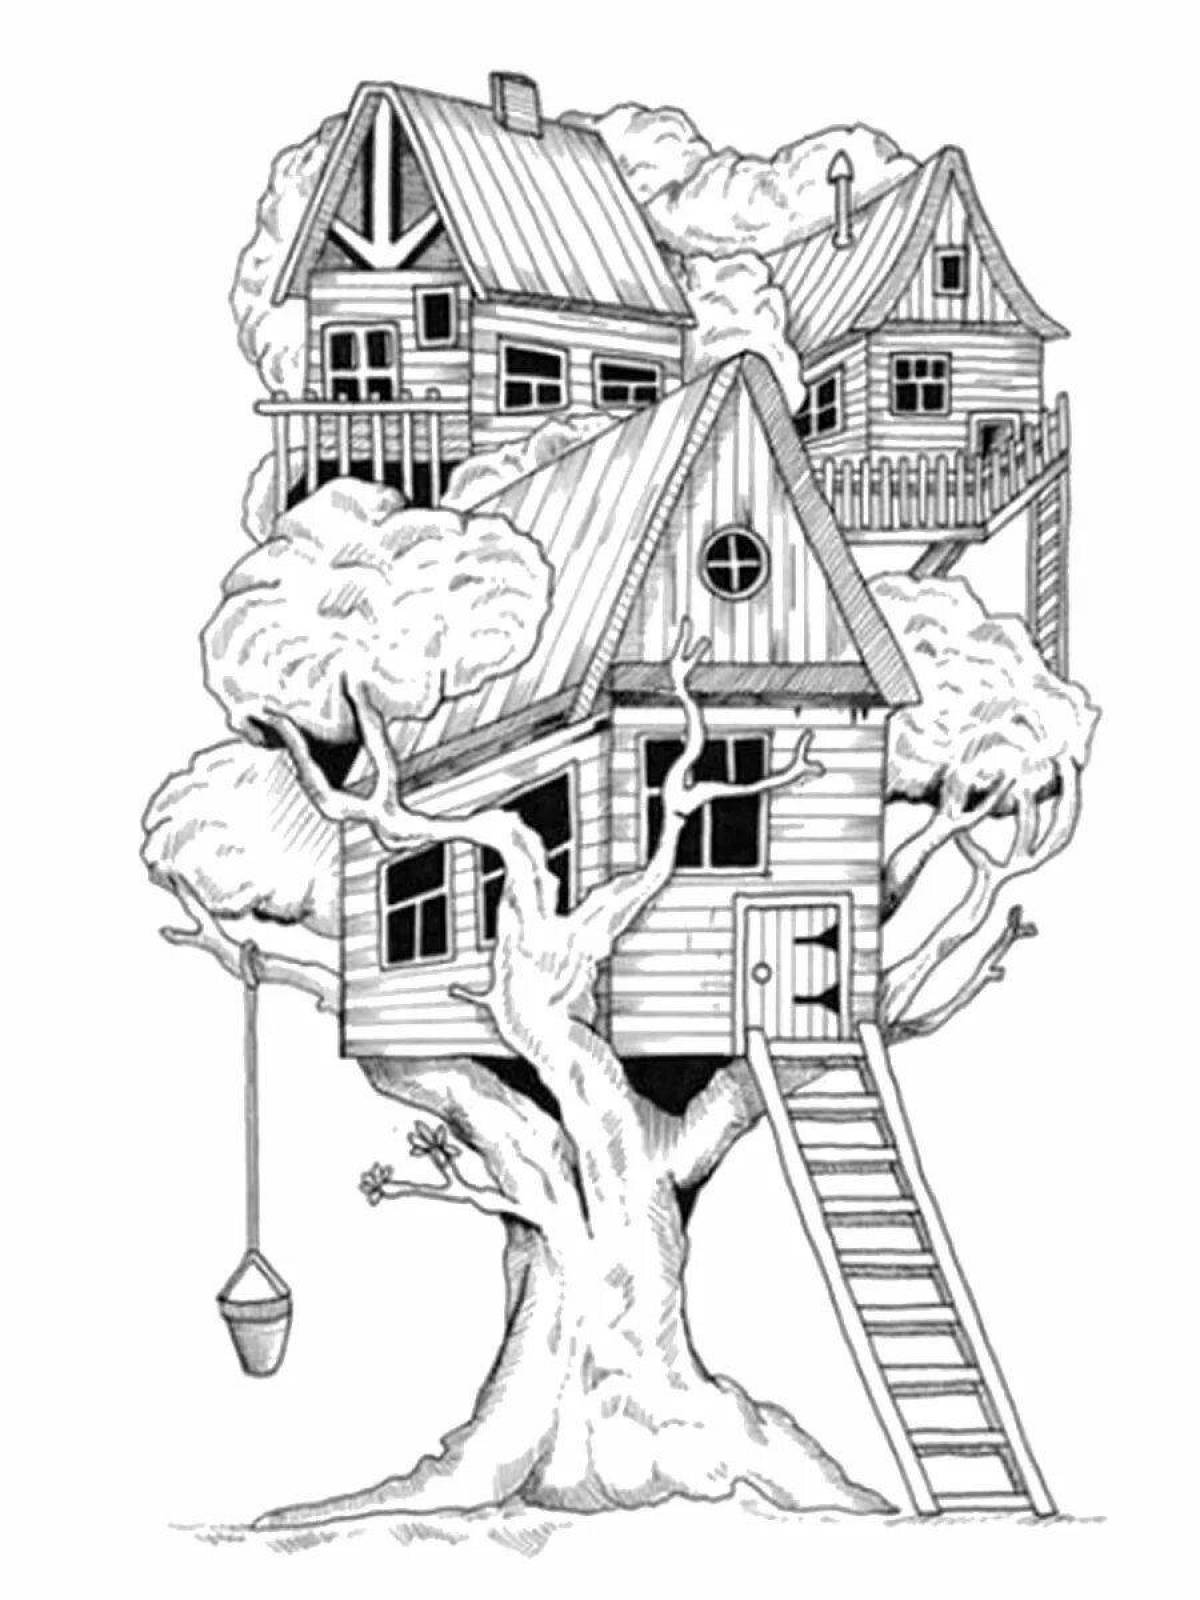 Quaint treehouse